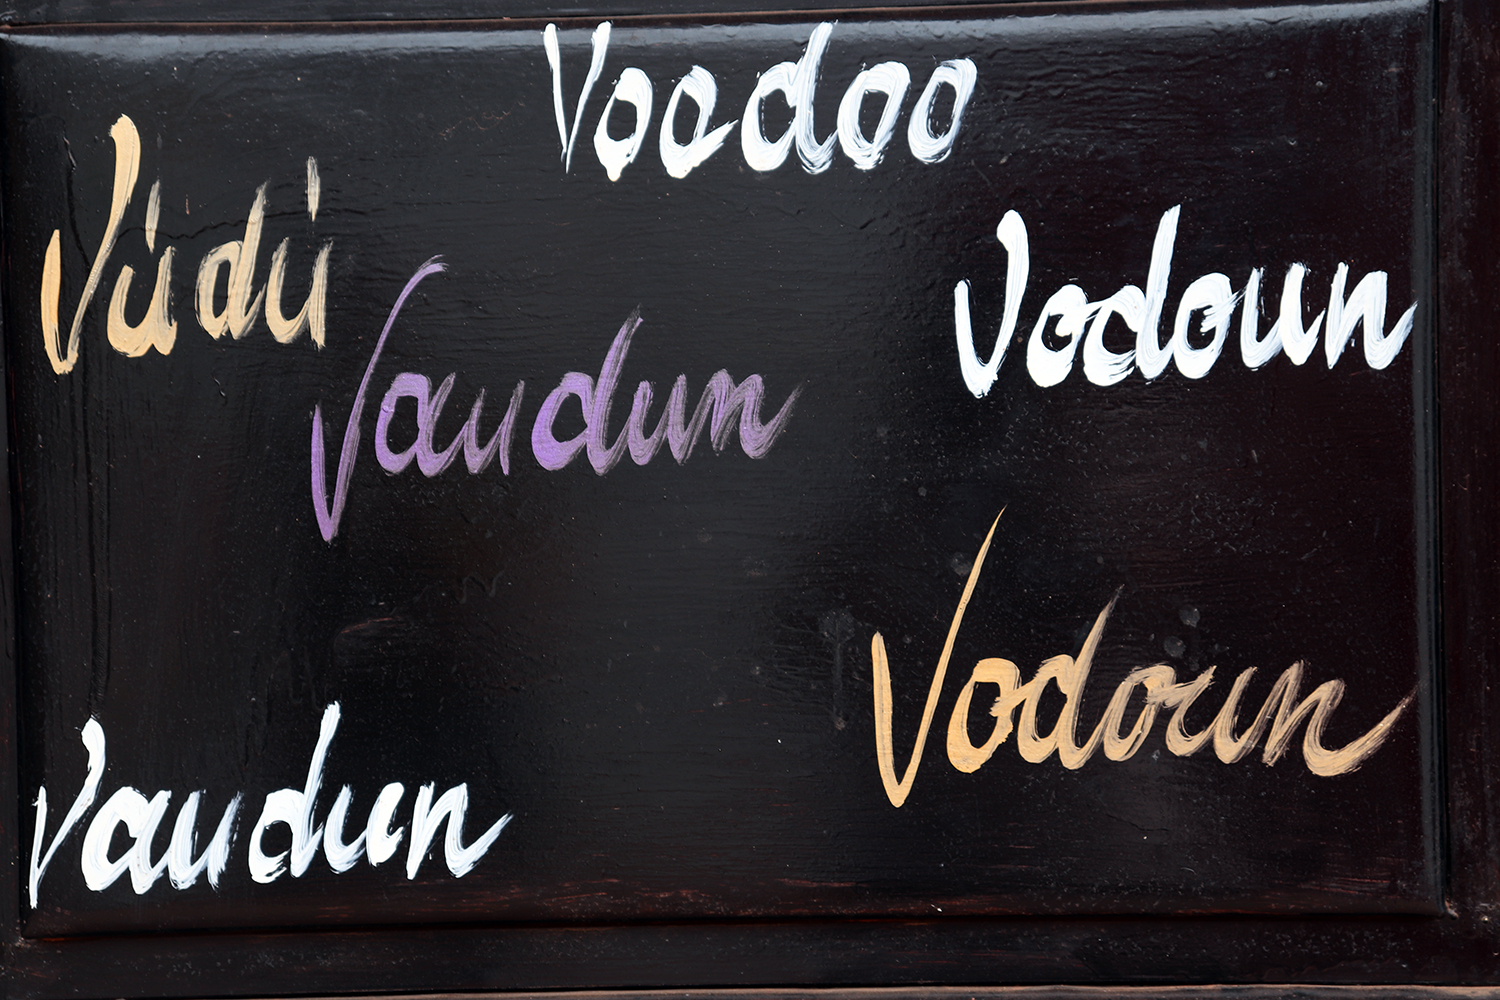 Le vaudou se pratique dans diverses régions du monde et les ortographes diffèrent.